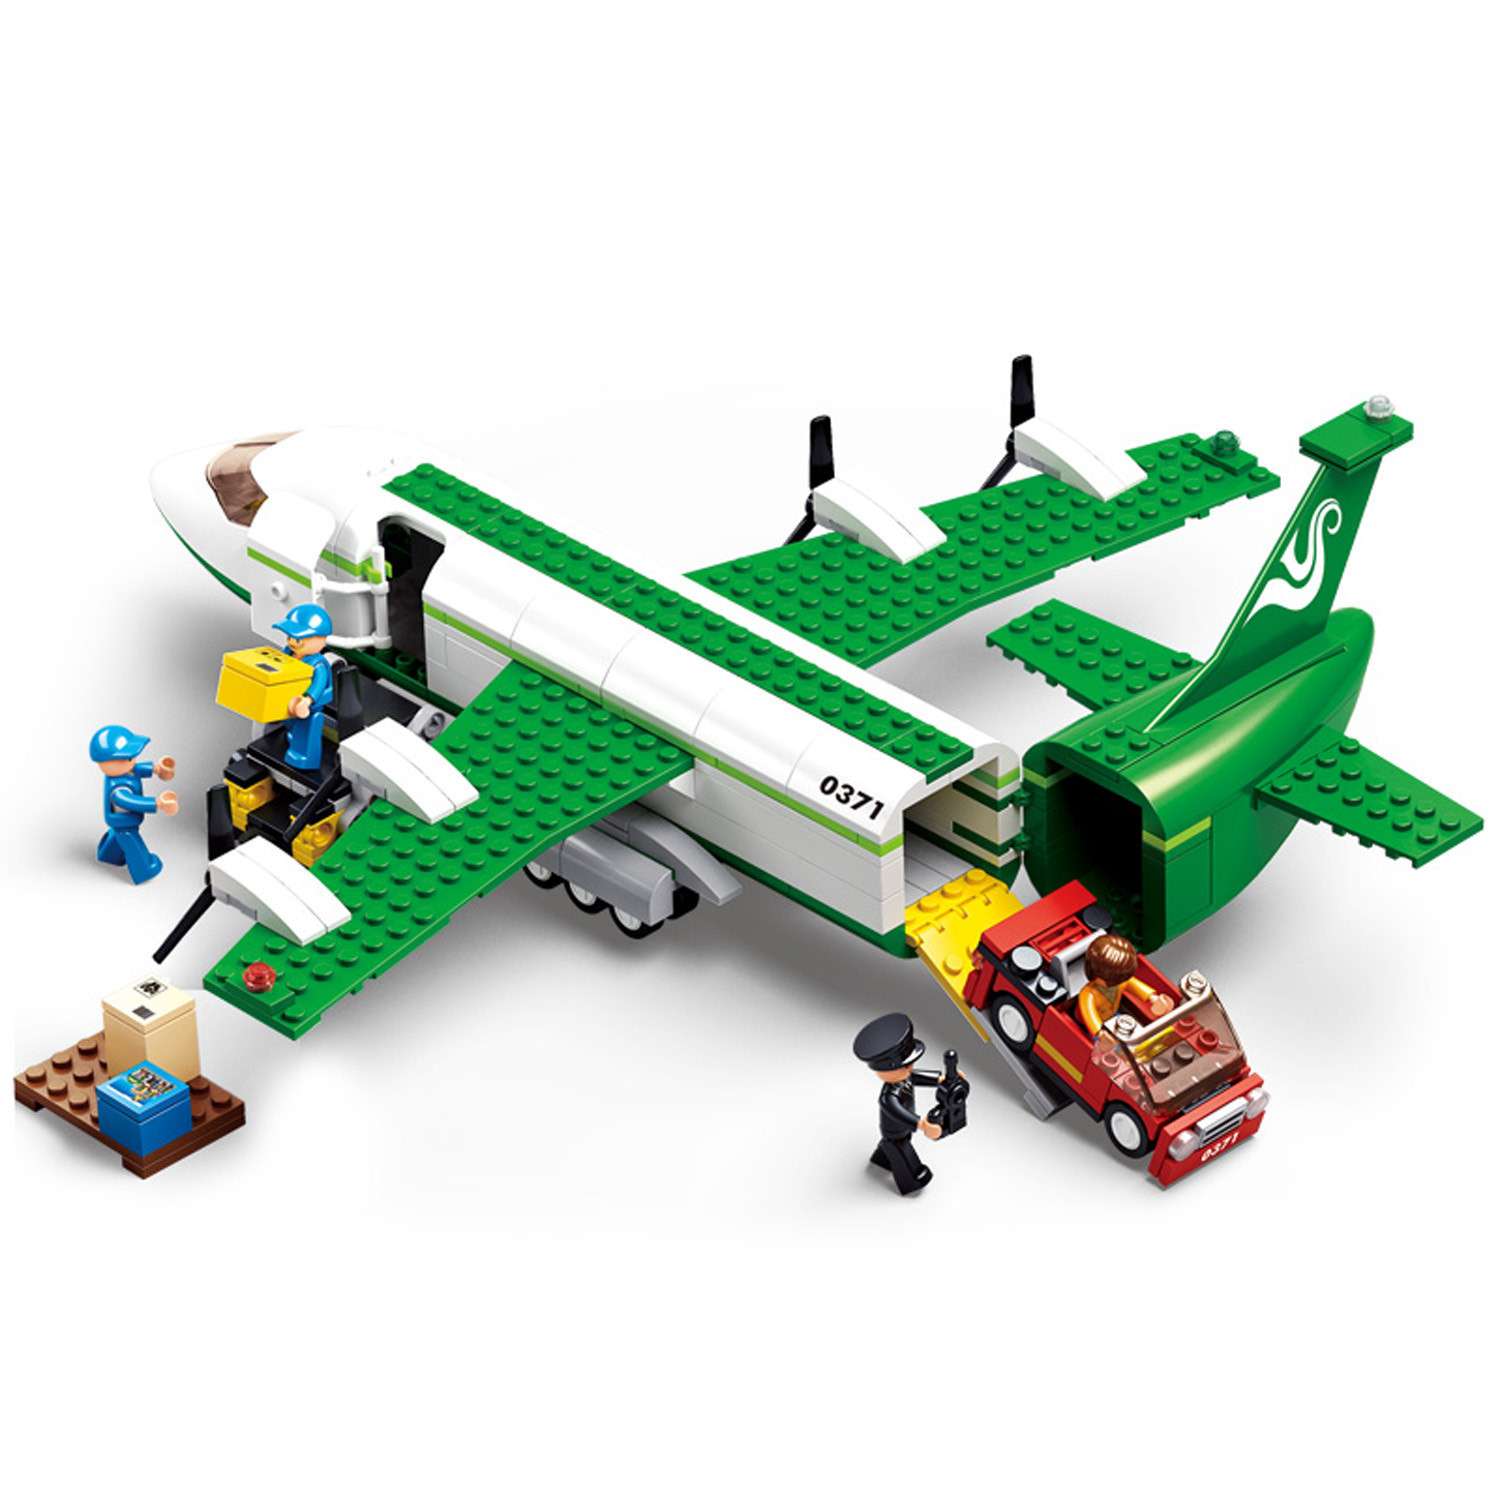 Коллекционерам на заметку: 20 редких и дорогих наборов LEGO, производившихся серийно